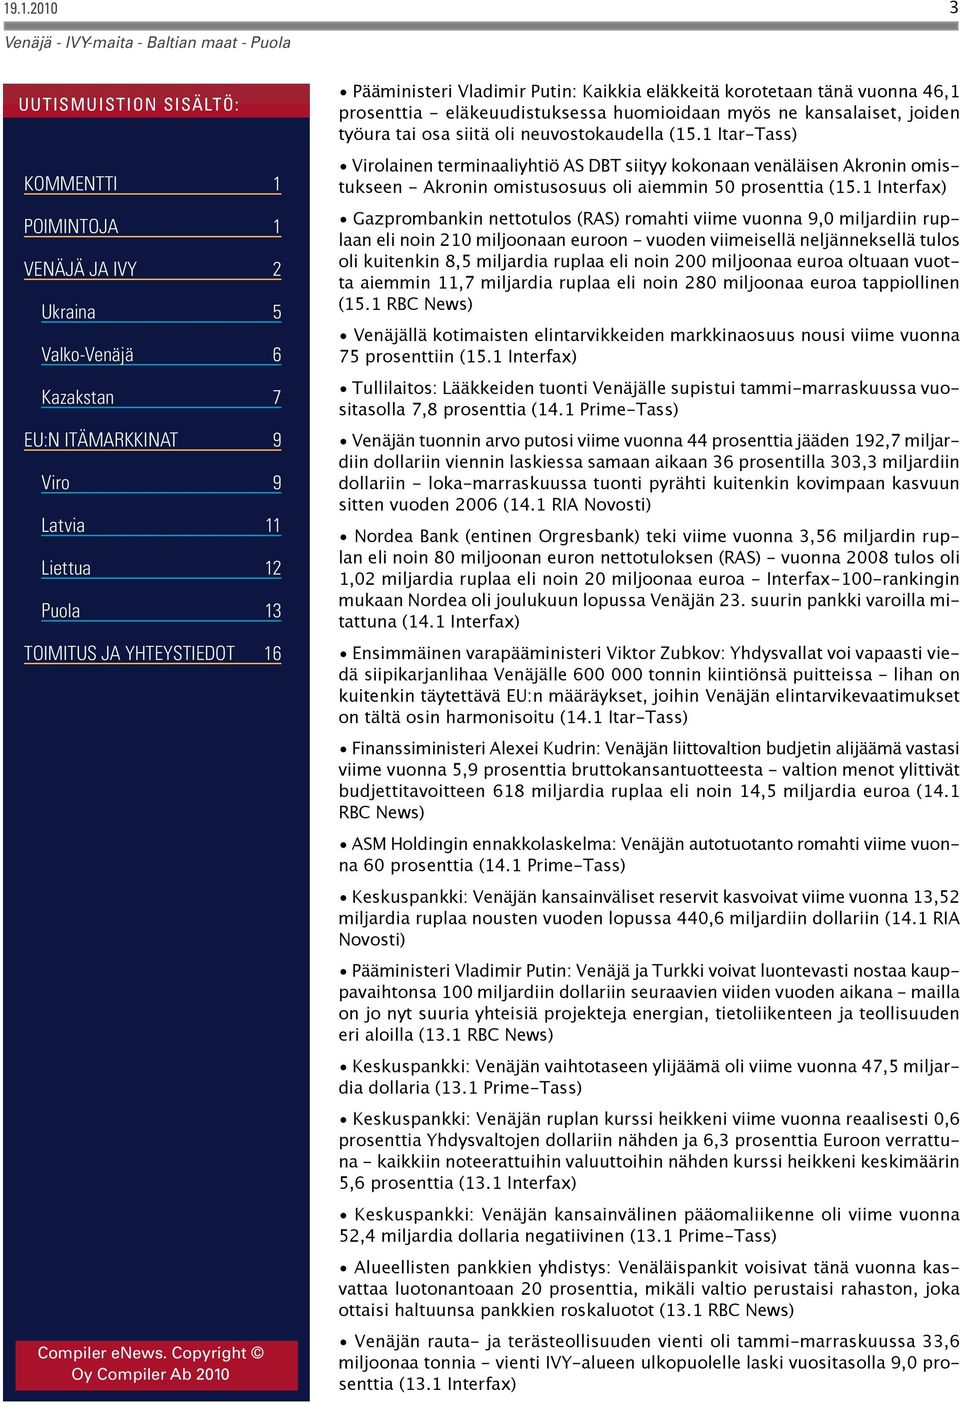 1 Interfax) Gazprombankin nettotulos (RAS) romahti viime vuonna 9,0 miljardiin ruplaan eli noin 210 miljoonaan euroon - vuoden viimeisellä neljänneksellä tulos oli kuitenkin 8,5 miljardia ruplaa eli